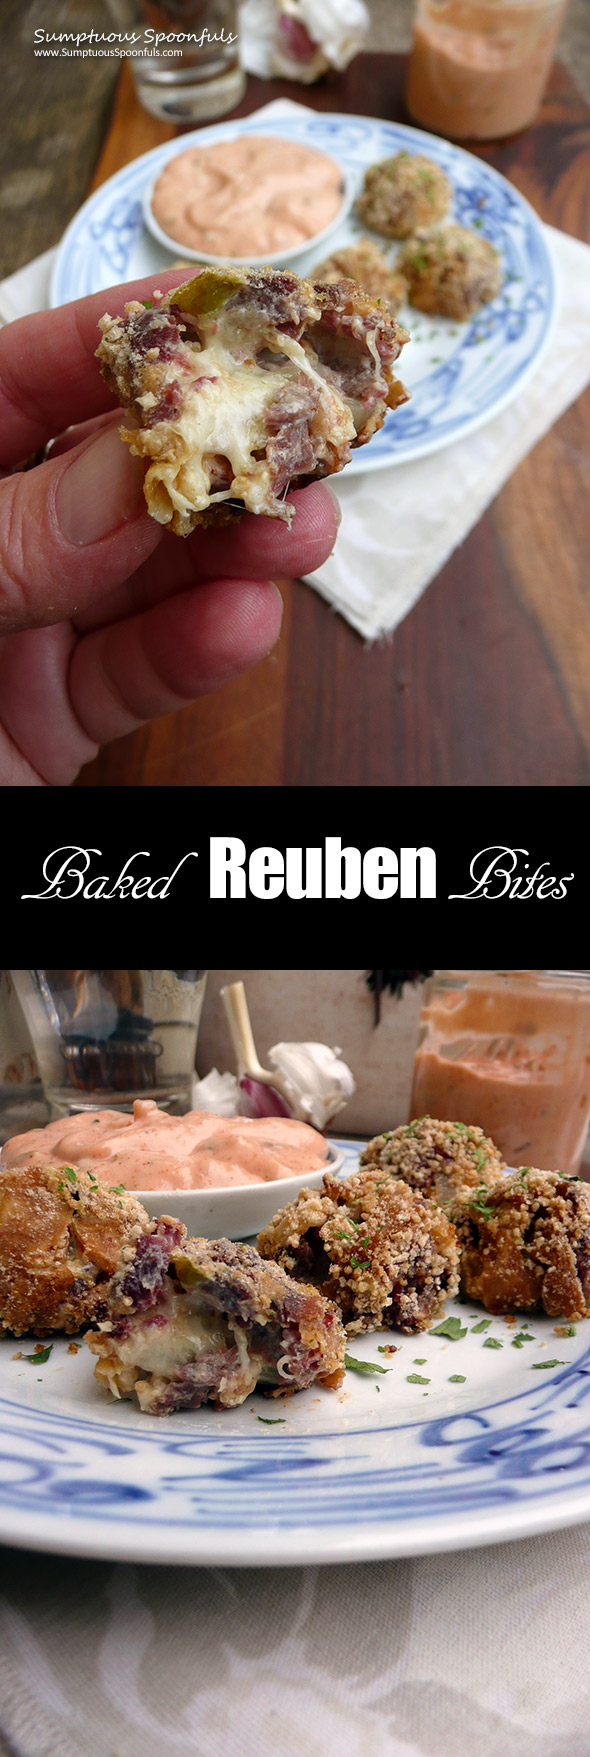 Baked Reuben Bites ~ Sumptuous Spoonfuls #cornedbeef #reuben #appetizers